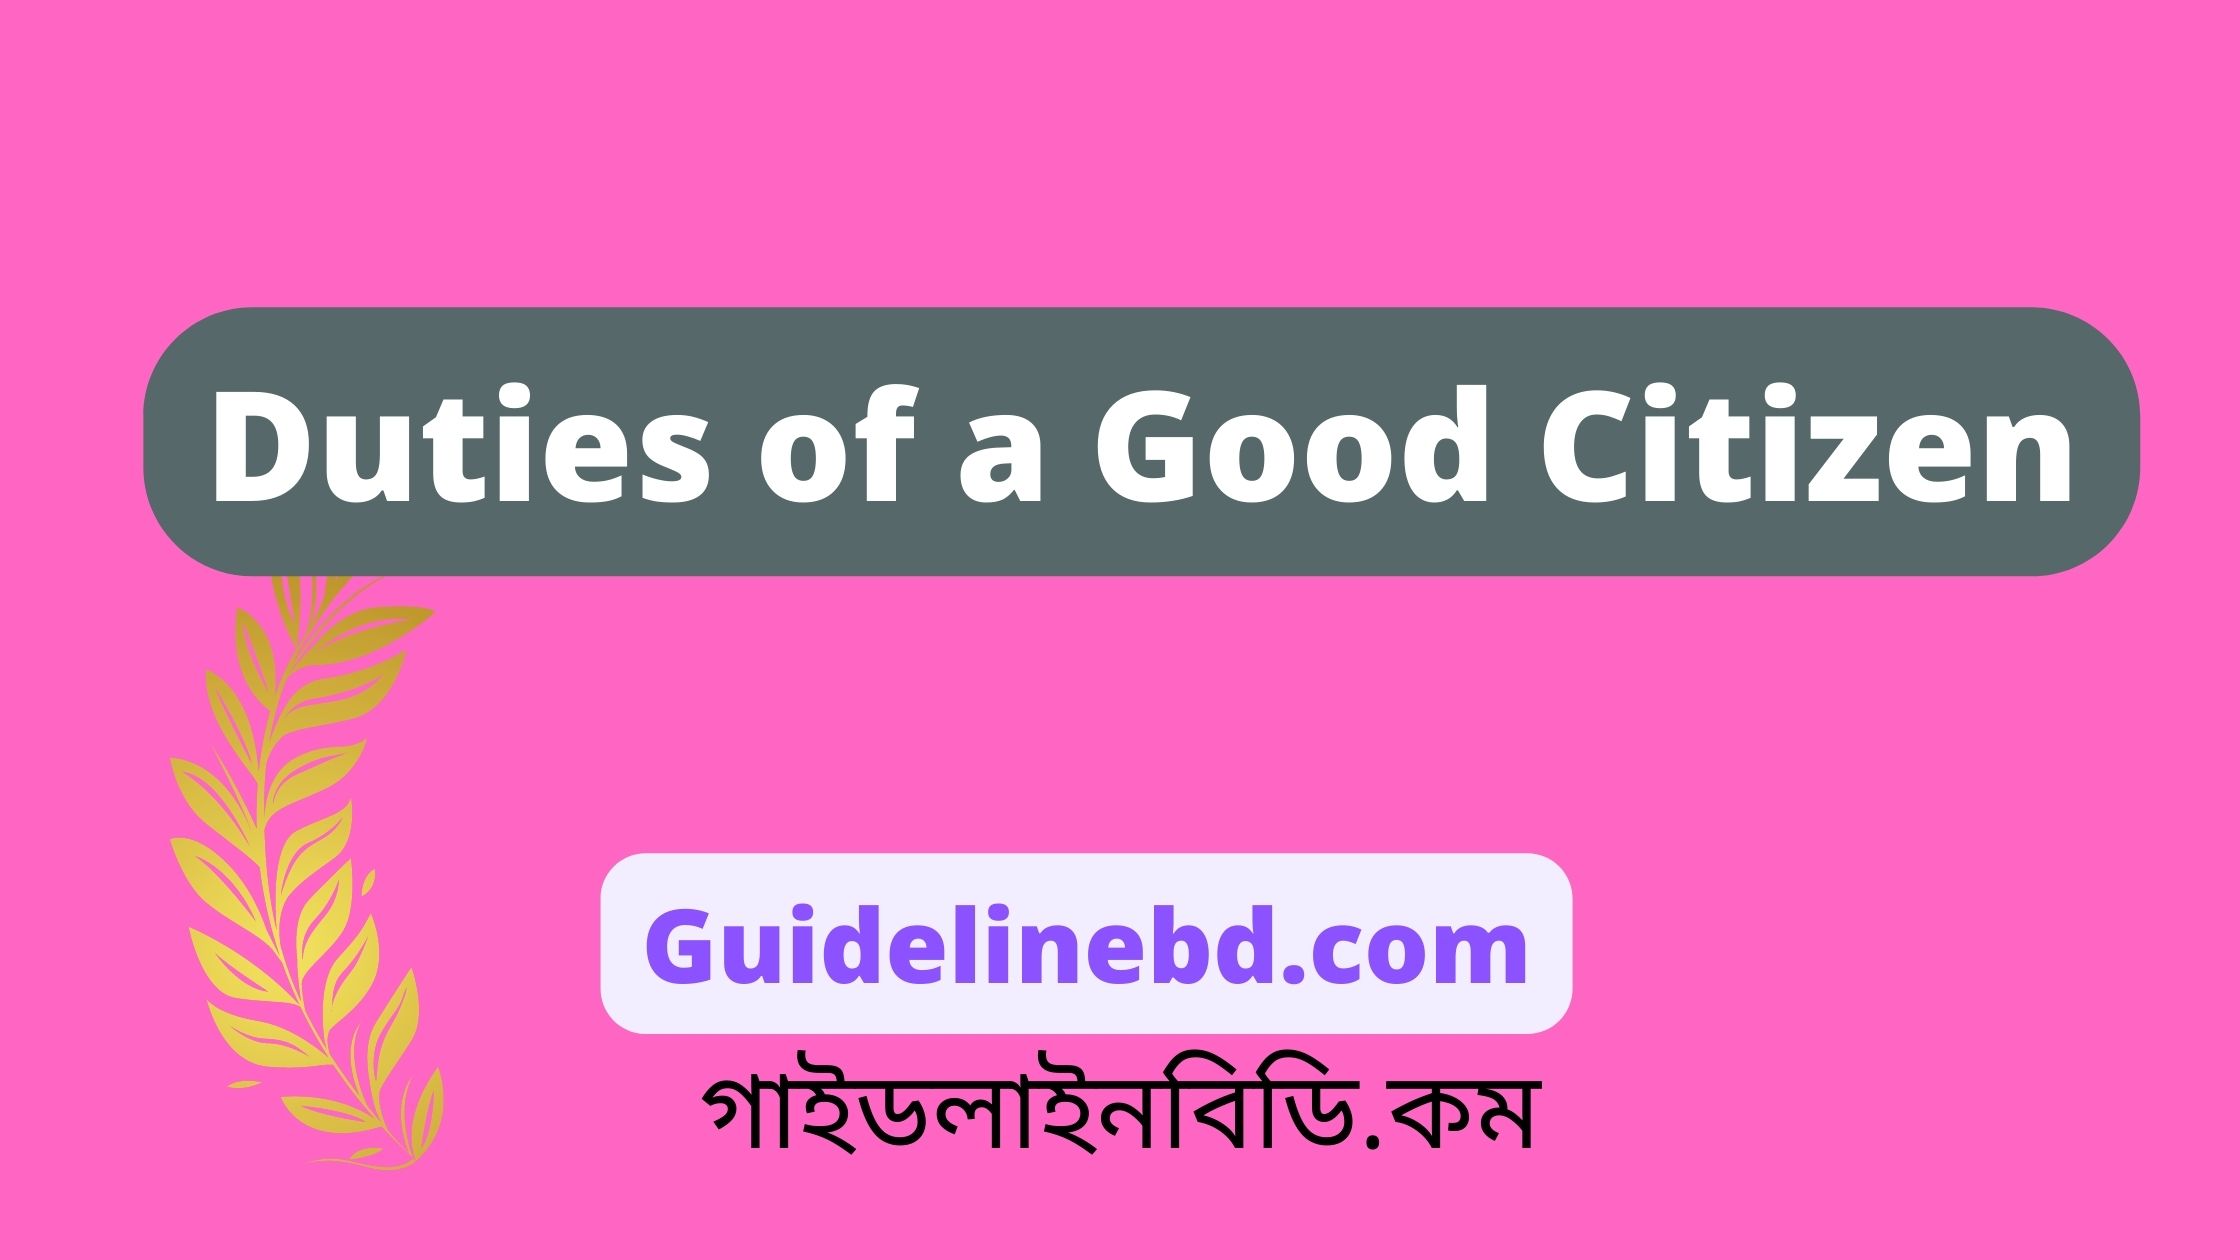 Duties of a Good Citizen